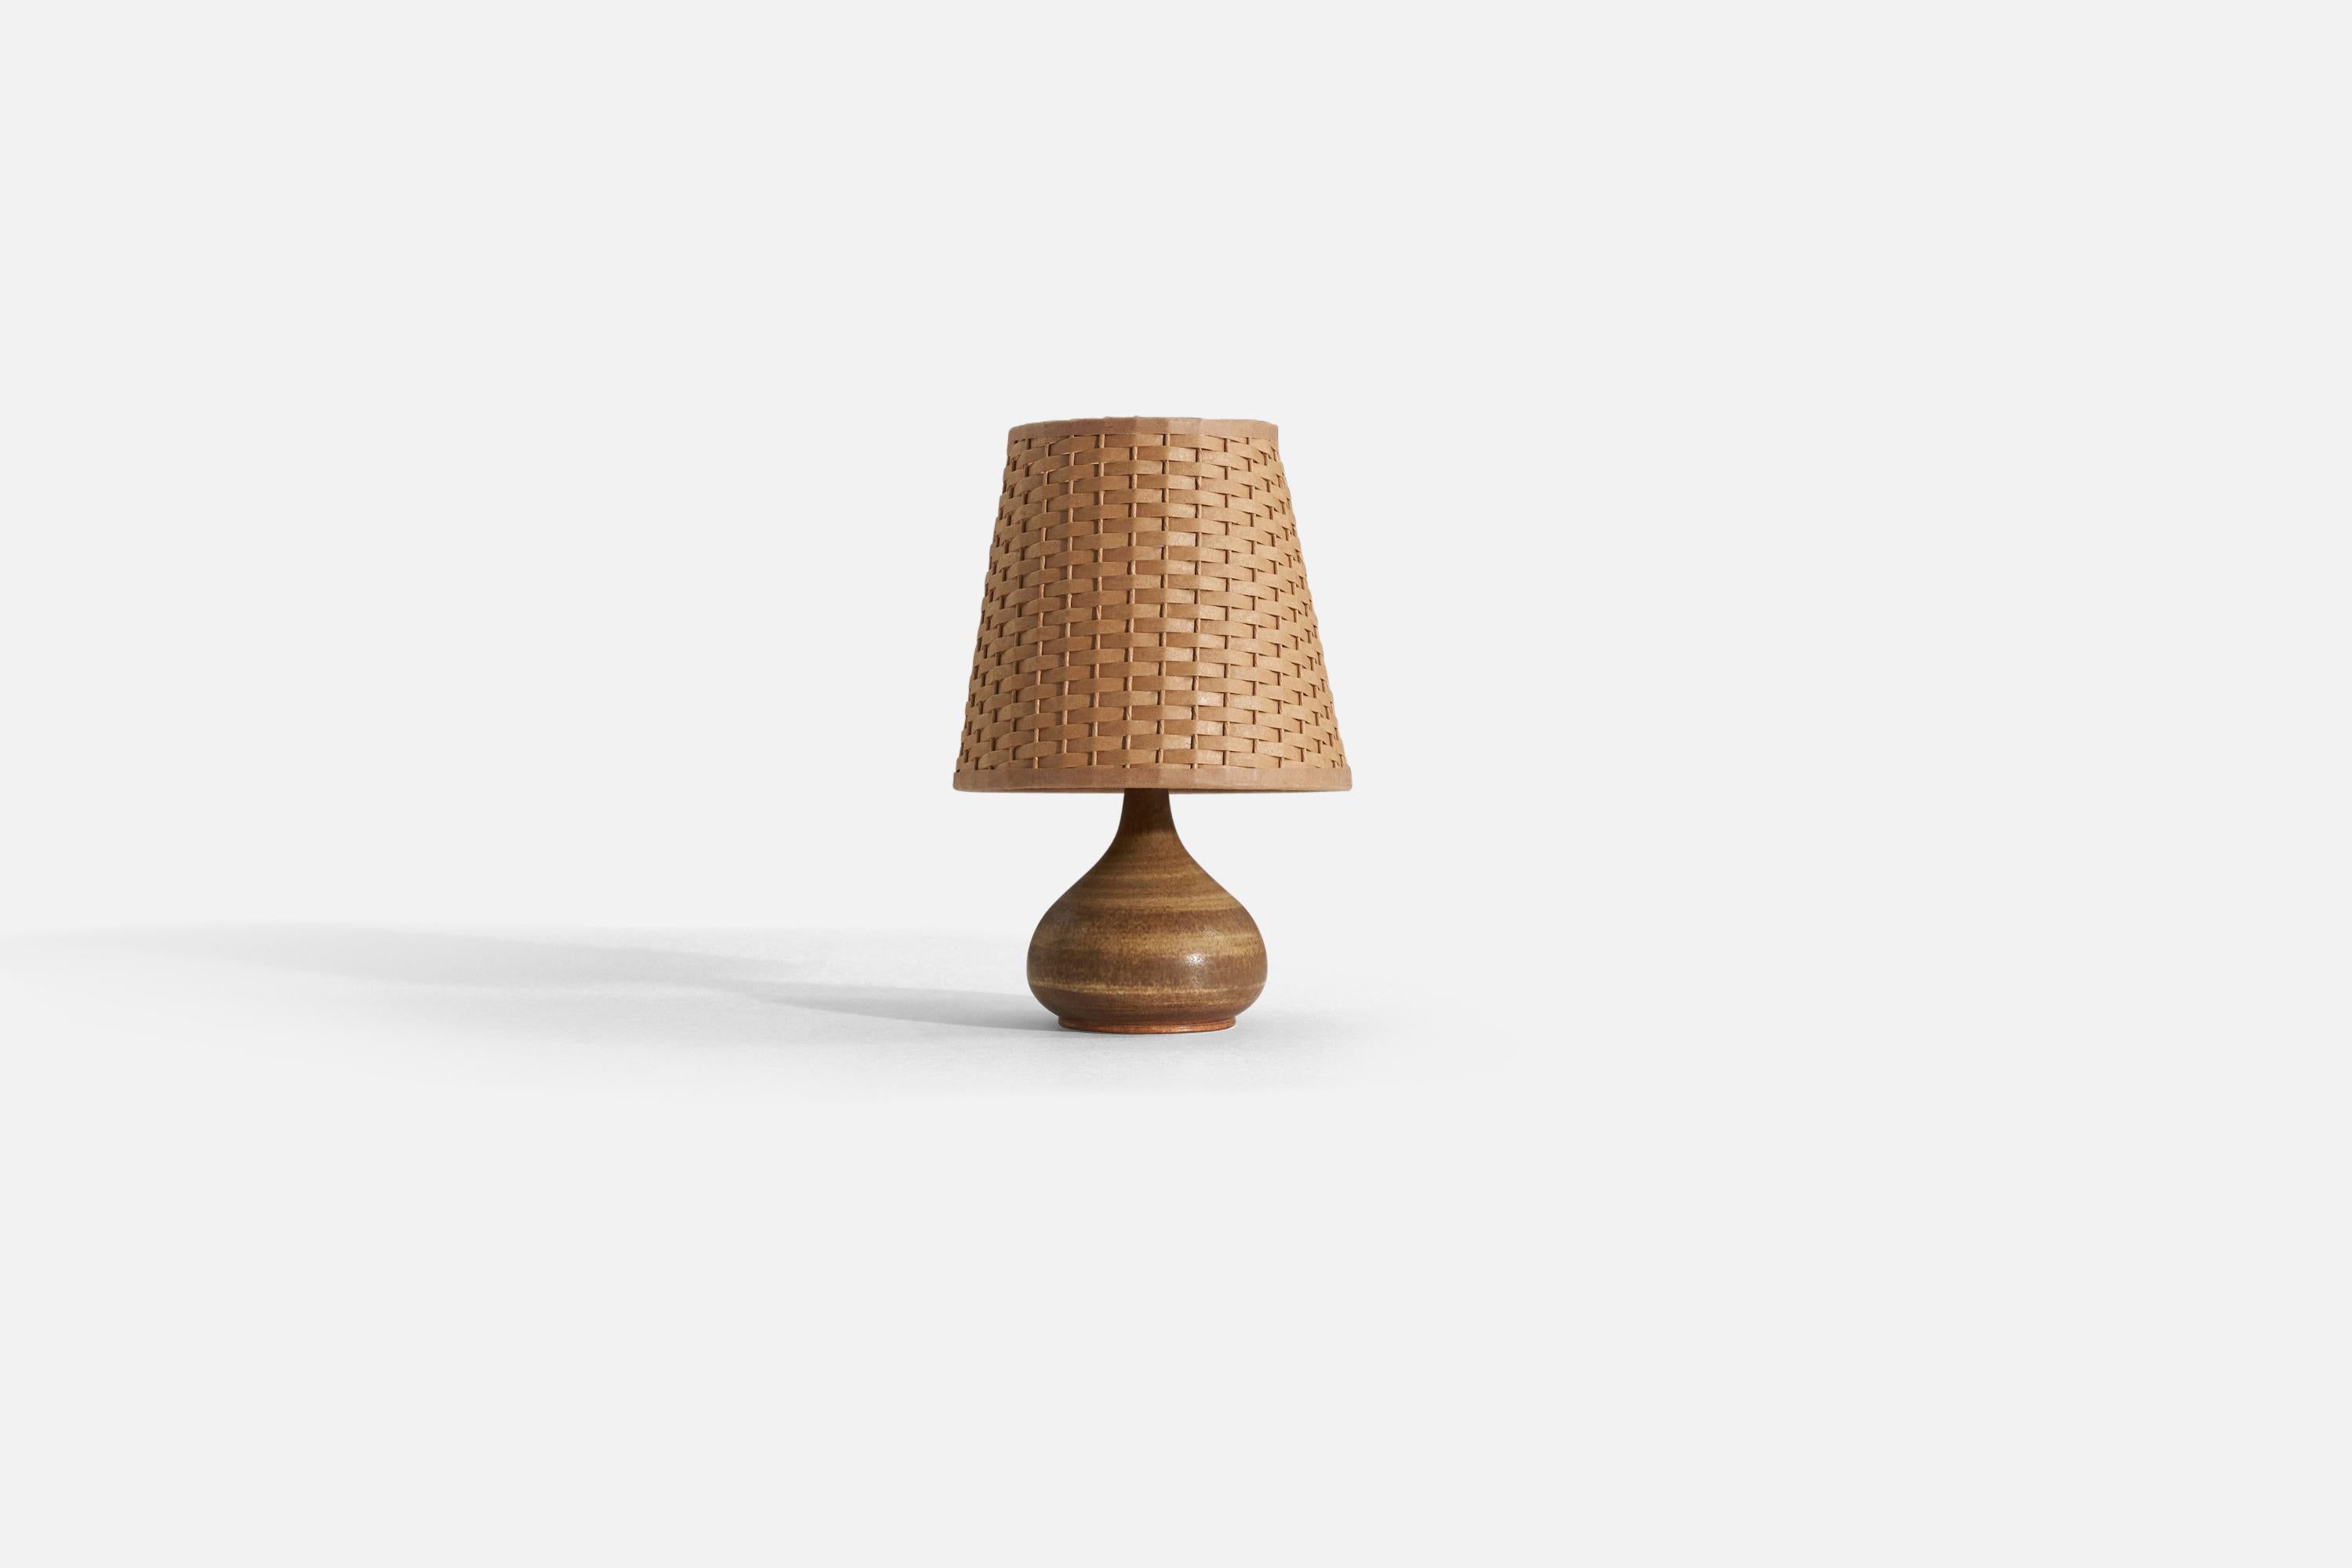 Lampe de table en grès émaillé brun conçue par Gunnar Borg pour Höganäs, Suède, années 1960.

Les dimensions indiquées ne comprennent pas l'abat-jour. Sur demande, un abat-jour illustré peut être inclus dans l'achat.

Les mesures indiquées sont